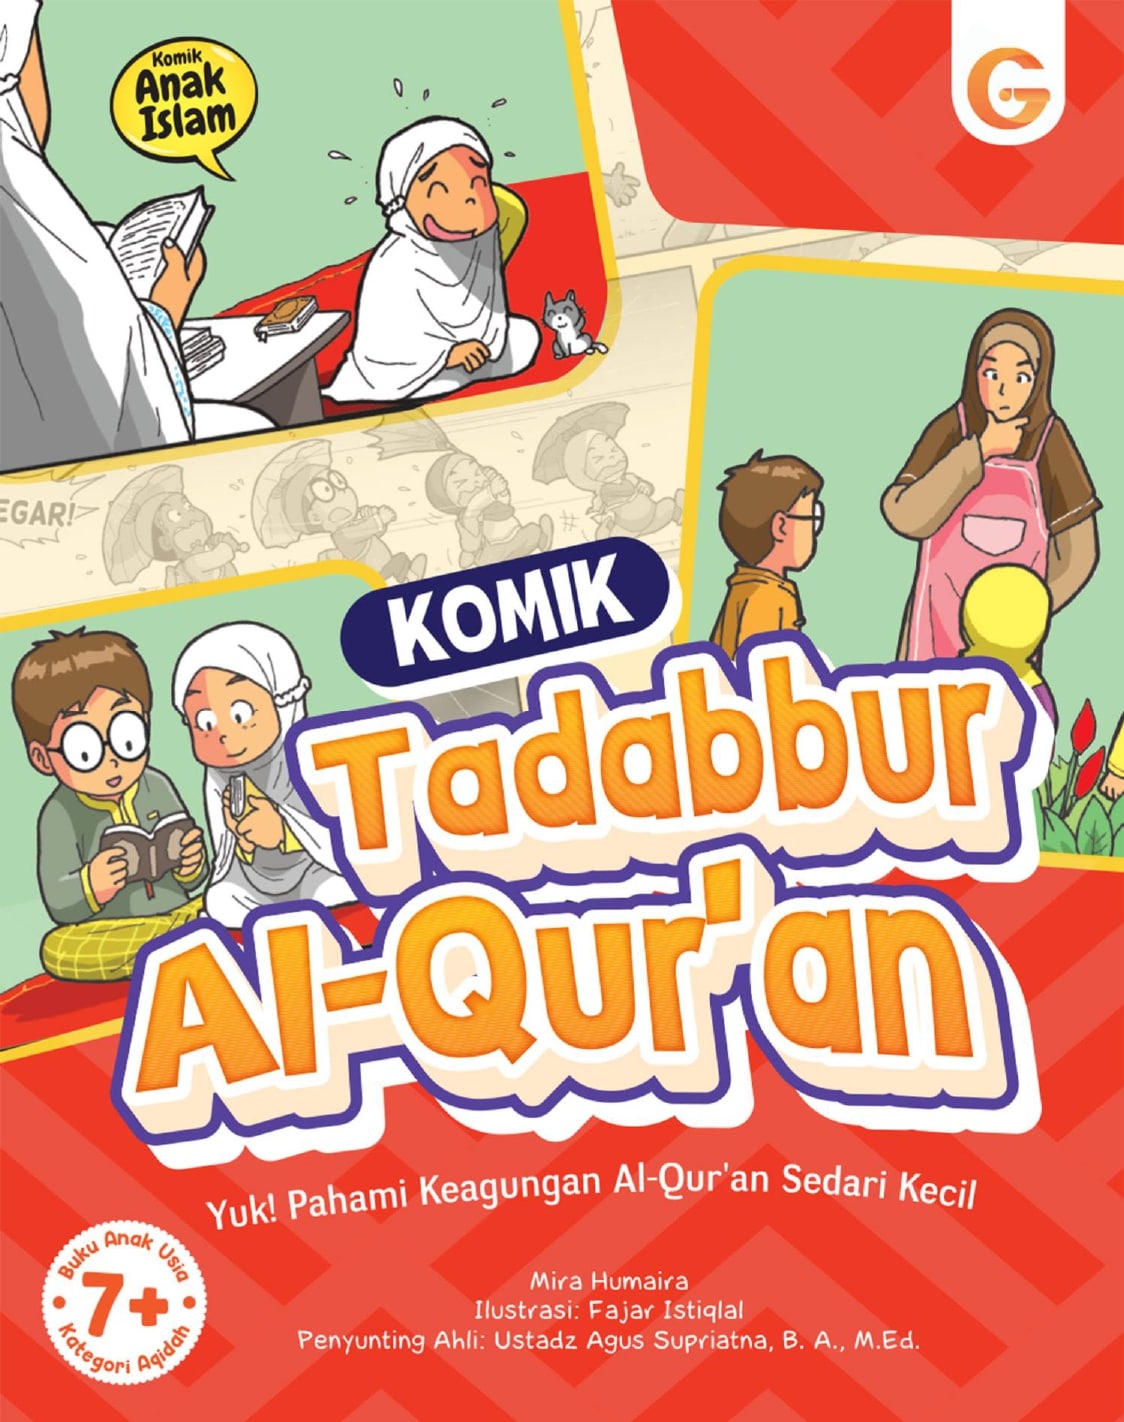 Komik Tadabbur Al-Qur'an :  yuk! pahami keagungan Al-Qur'an sedari kecil